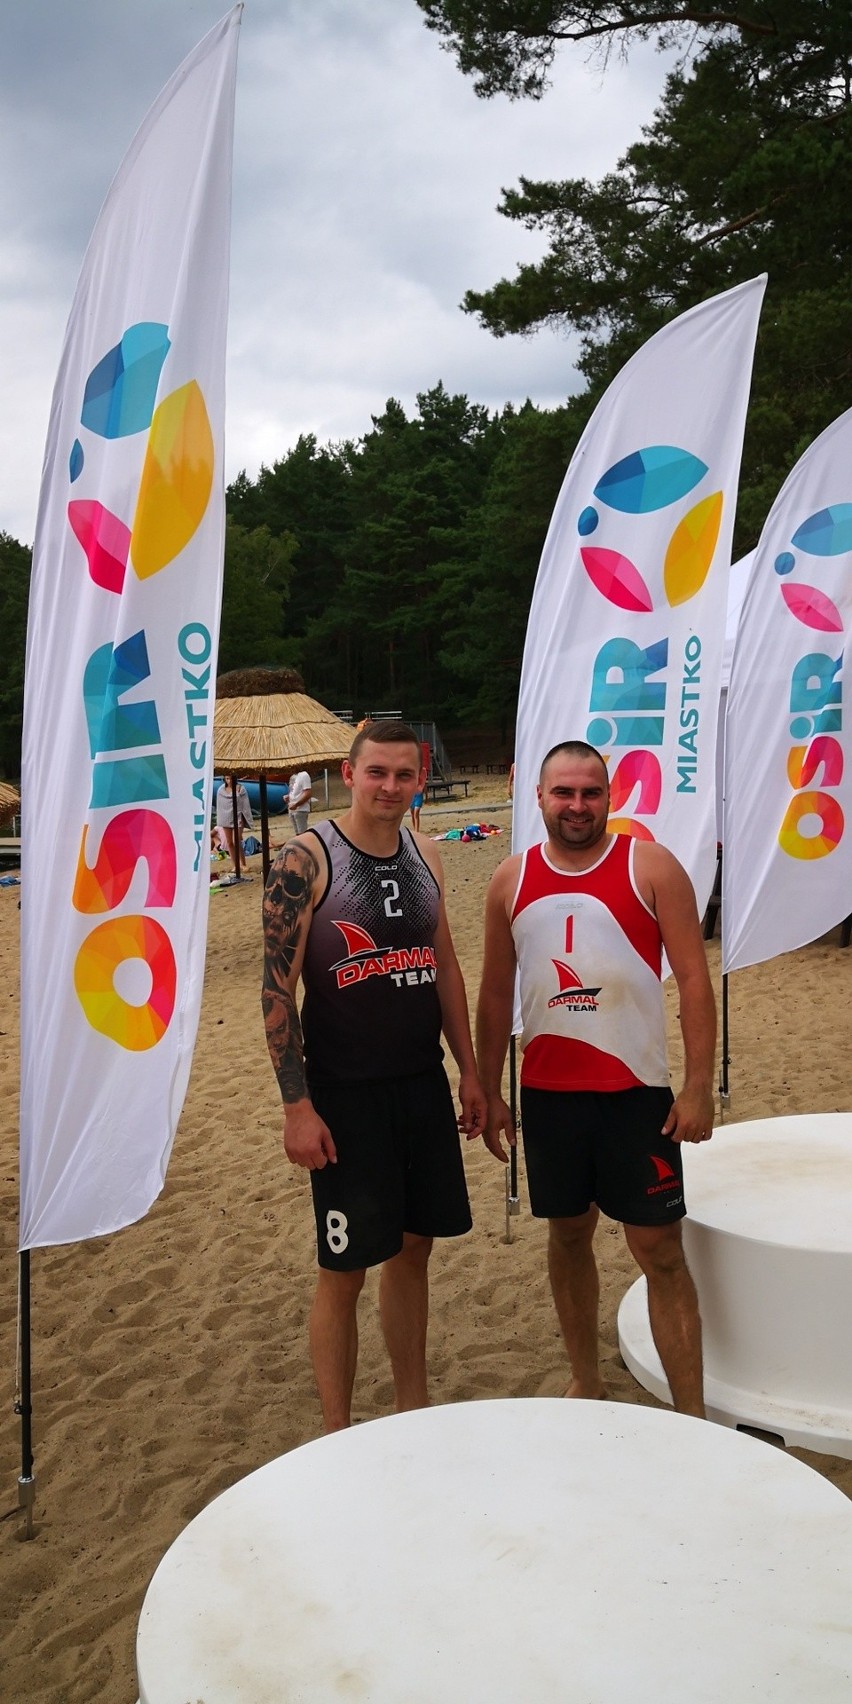 Nad jeziorem Lednik odbył się kolejny turniej plażowej piłki...